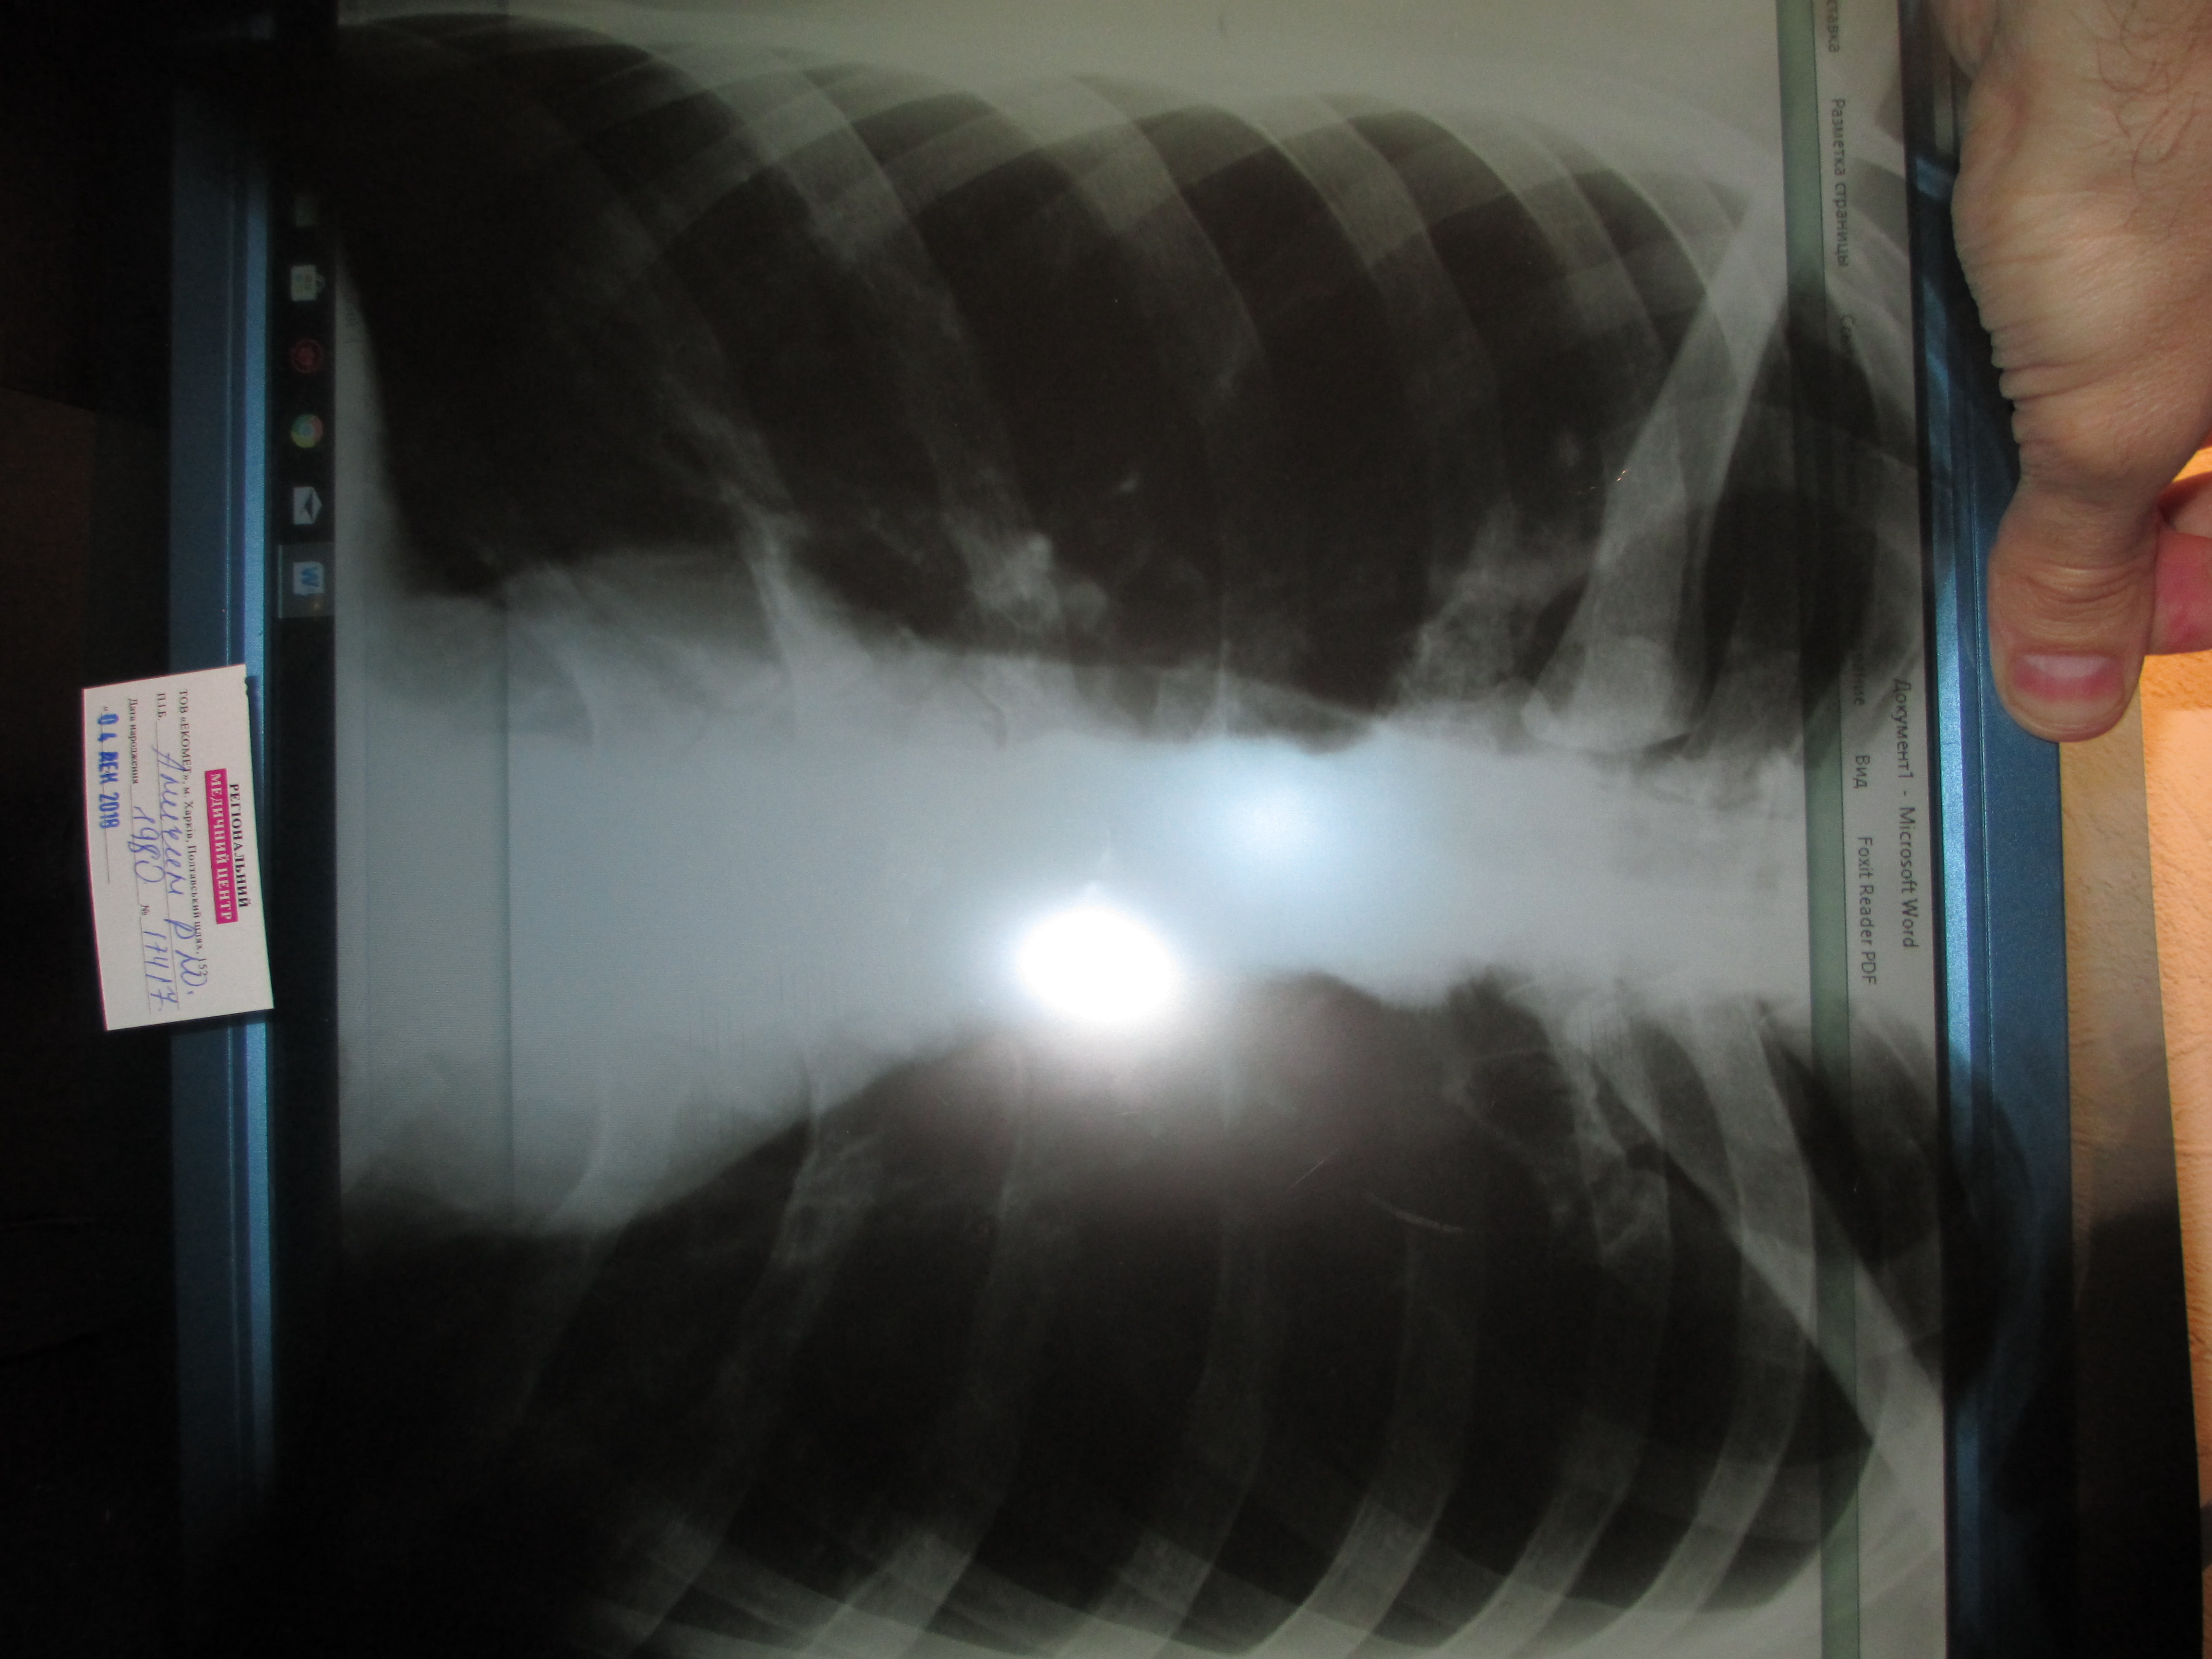 Перелом ребра рентген фото